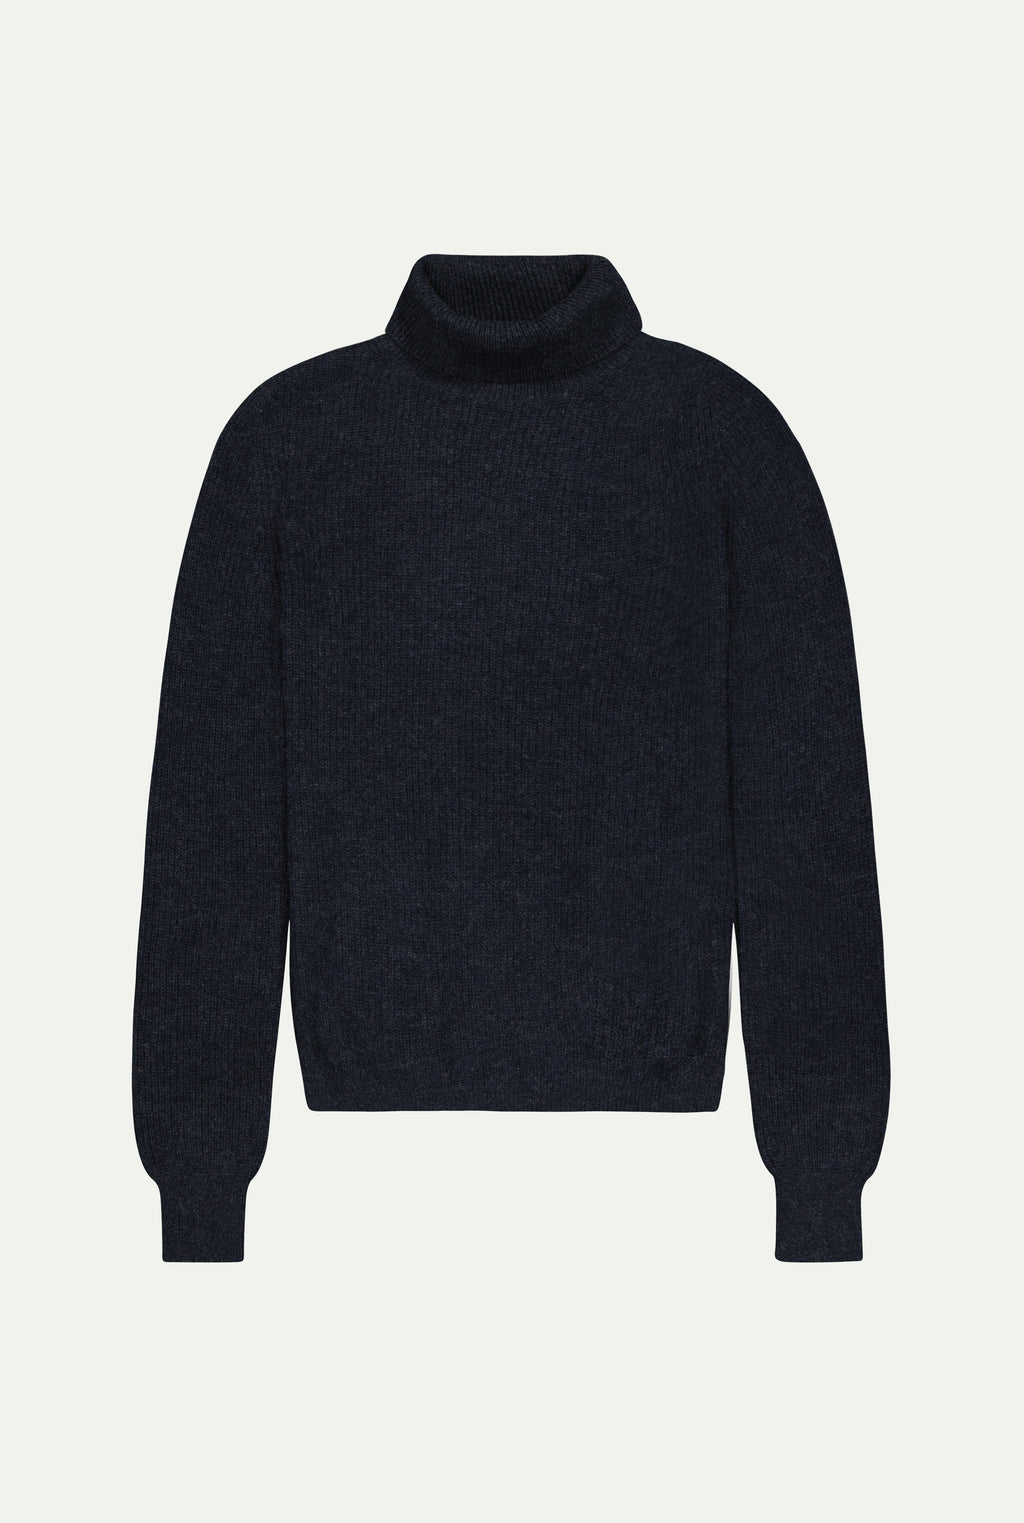 GENOA cashmere sweater